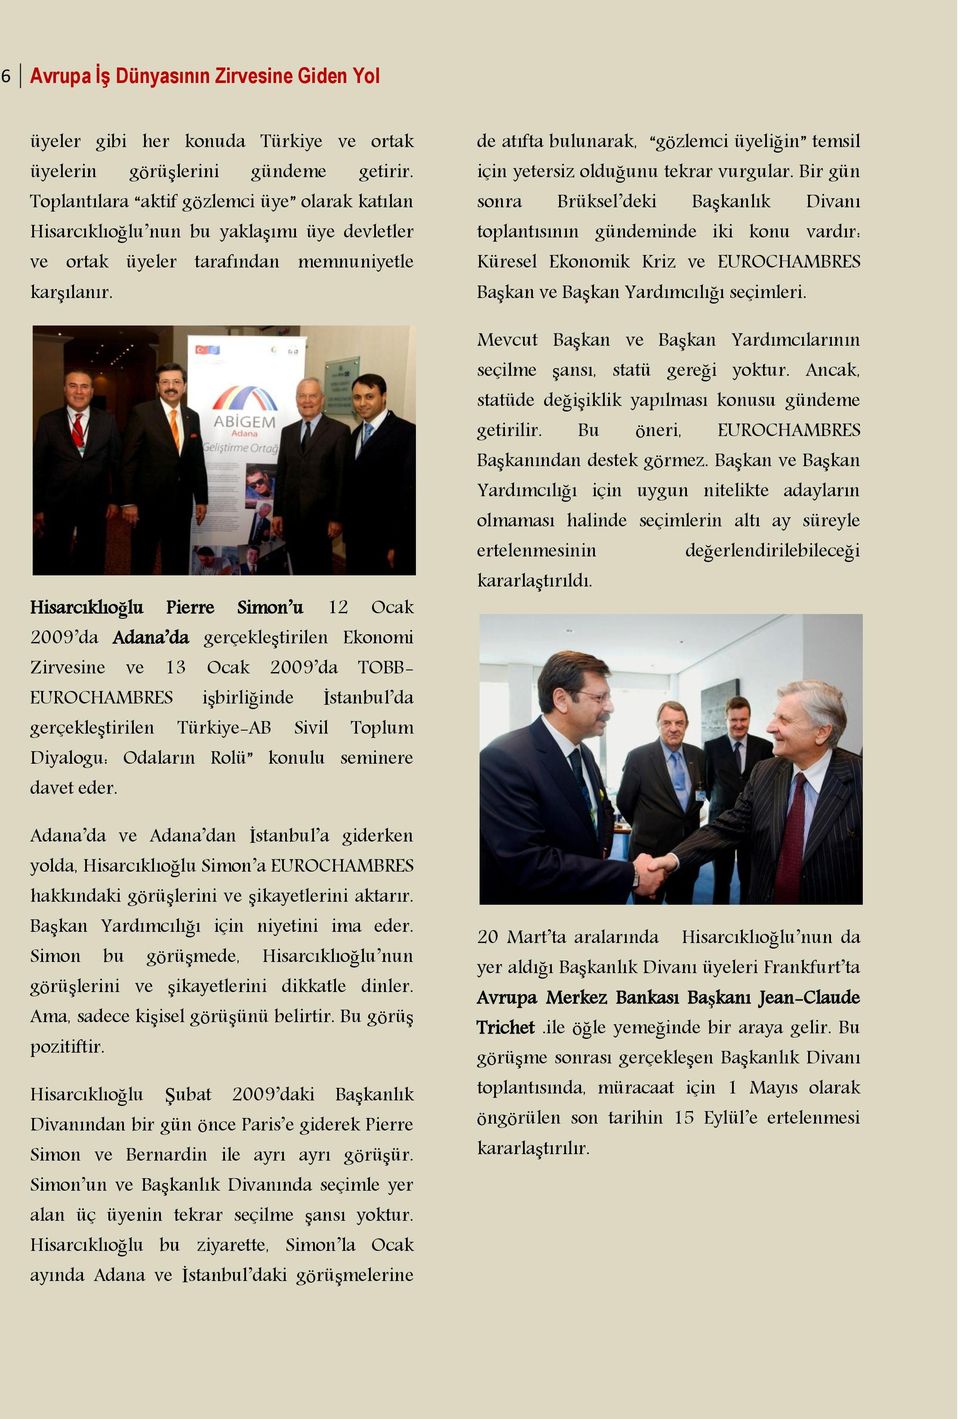 Hisarcıklıoğlu Pierre Simon u 12 Ocak 2009 da Adana da gerçekleştirilen Ekonomi Zirvesine ve 13 Ocak 2009 da TOBB- EUROCHAMBRES işbirliğinde İstanbul da gerçekleştirilen Türkiye-AB Sivil Toplum